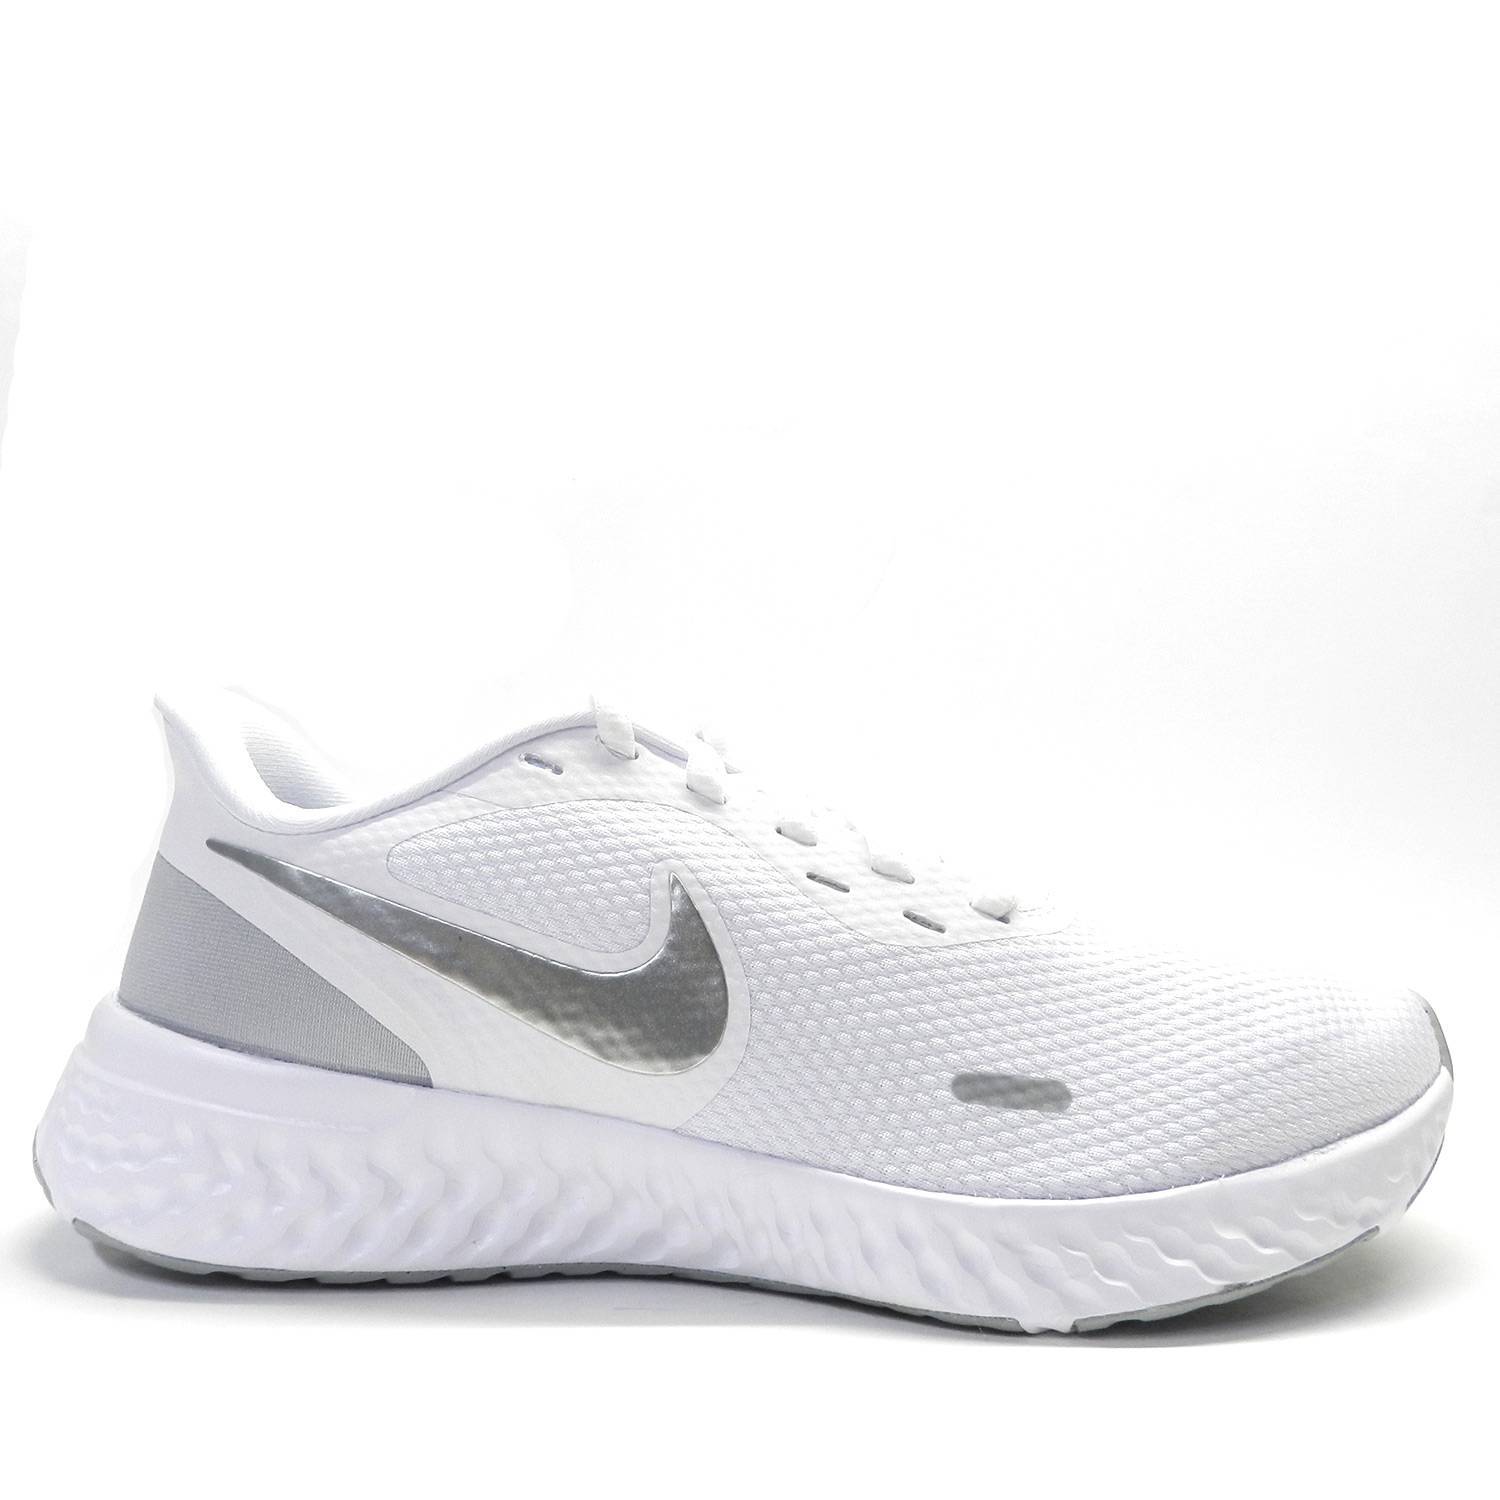 Bolsa Con rapidez extinción Zapatillas Nike Revolution 5 Blanco - Escala Sabates - Envío gratuito